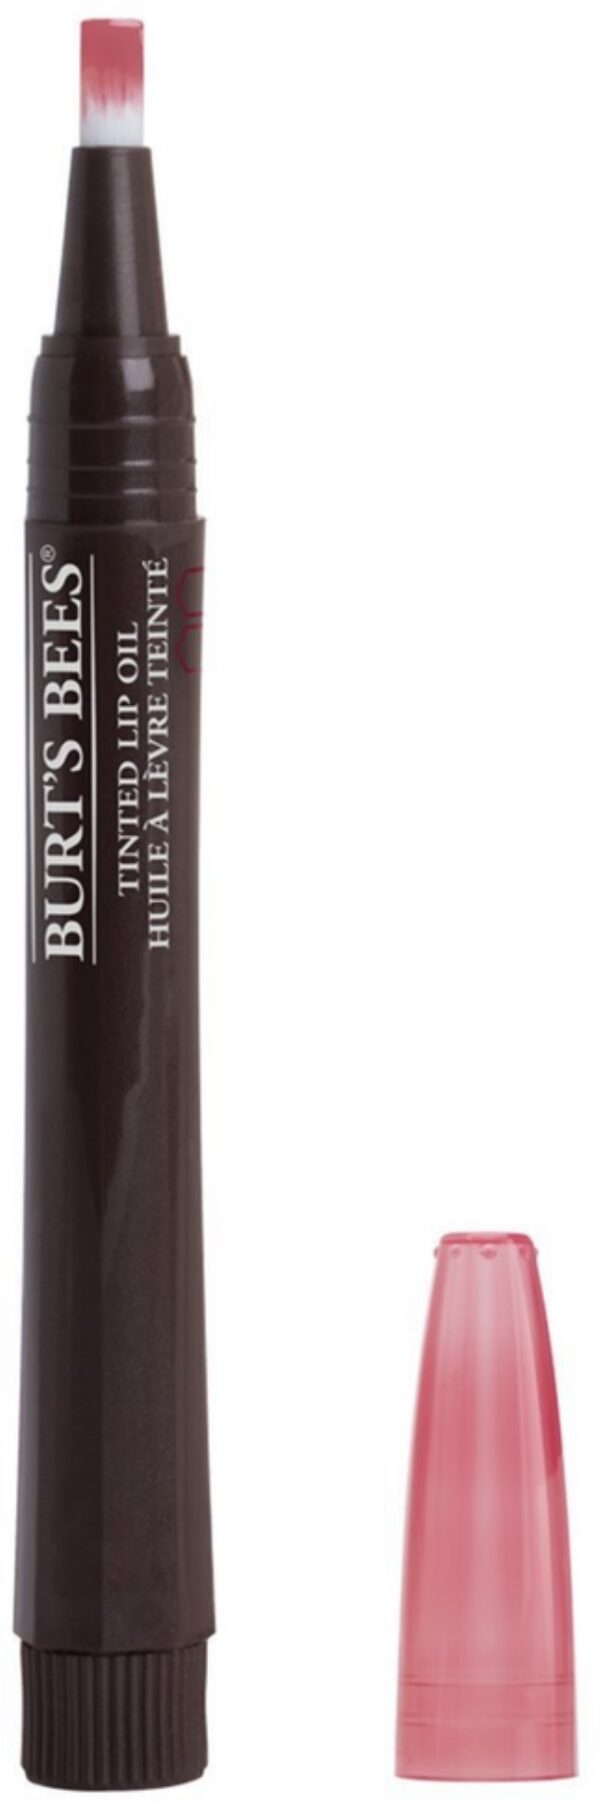 Burt’s Bees 100 % Natural Moisturizing Tinted Lip Oil, Misted Plum 1 Ea Cosmetics